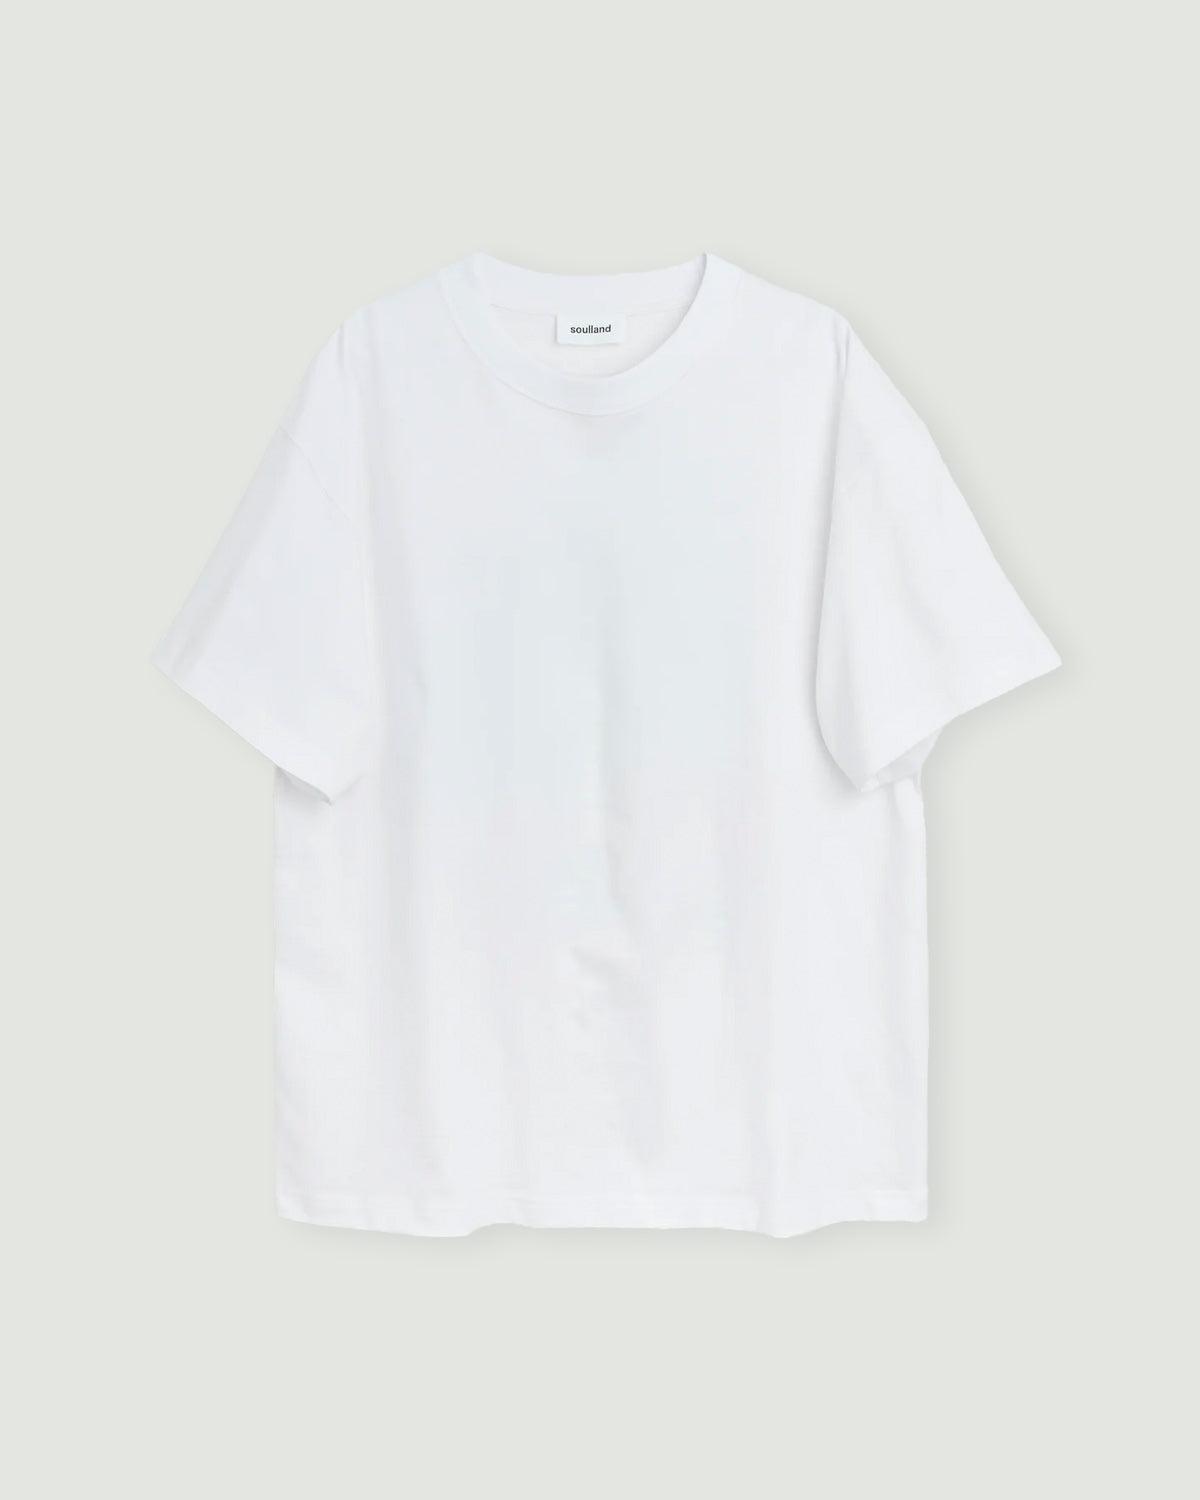 Kai BHI NO 002 T-shirt - soulland - Kul og Koks